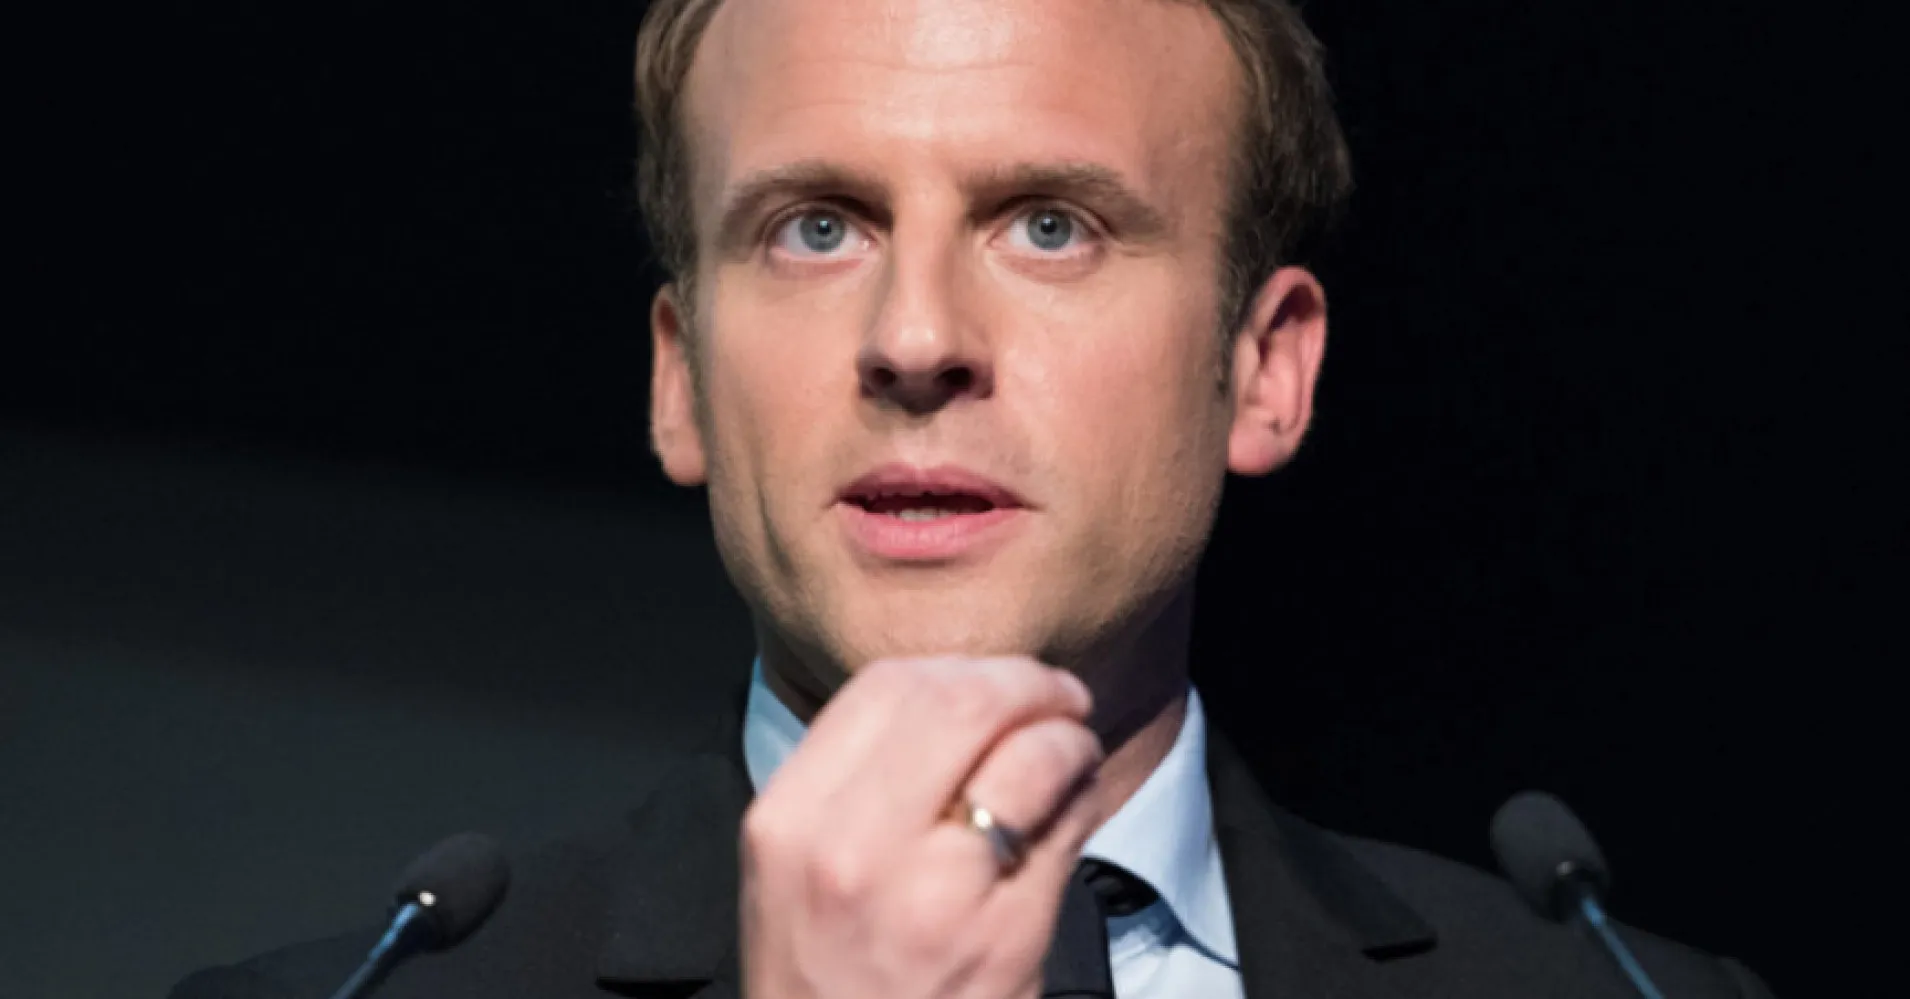 La France ne répondra pas à une éventuelle frappe russe avec des armes nucléaires en Ukraine, a déclaré Macron